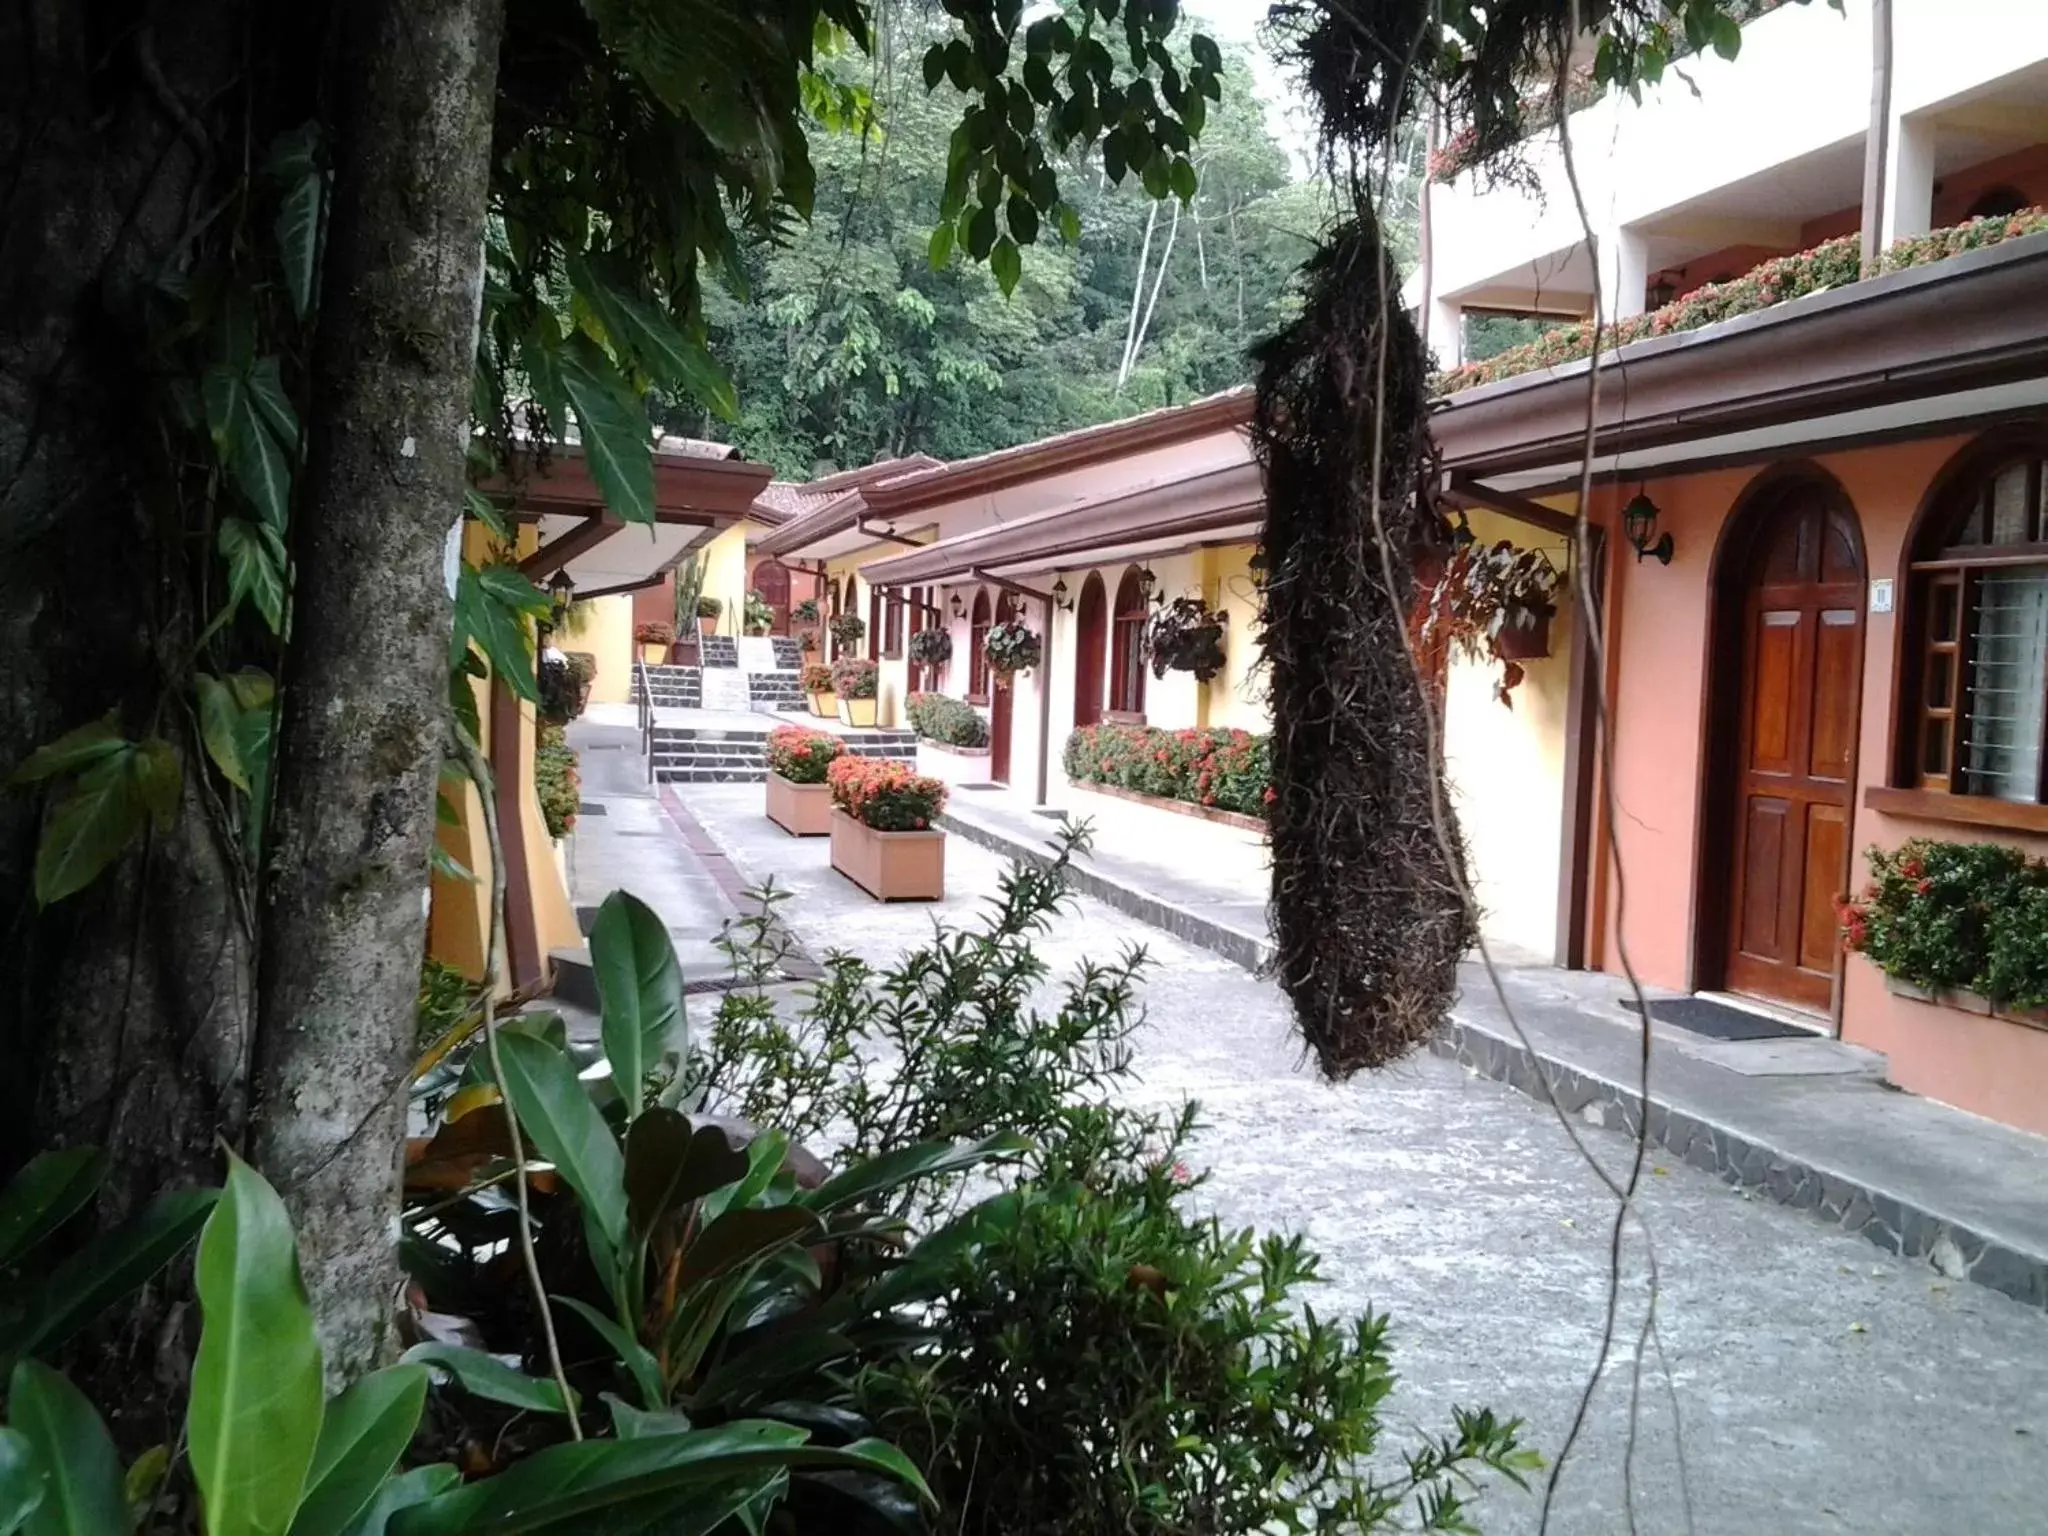 Area and facilities in El Tucano Resort & Thermal Spa